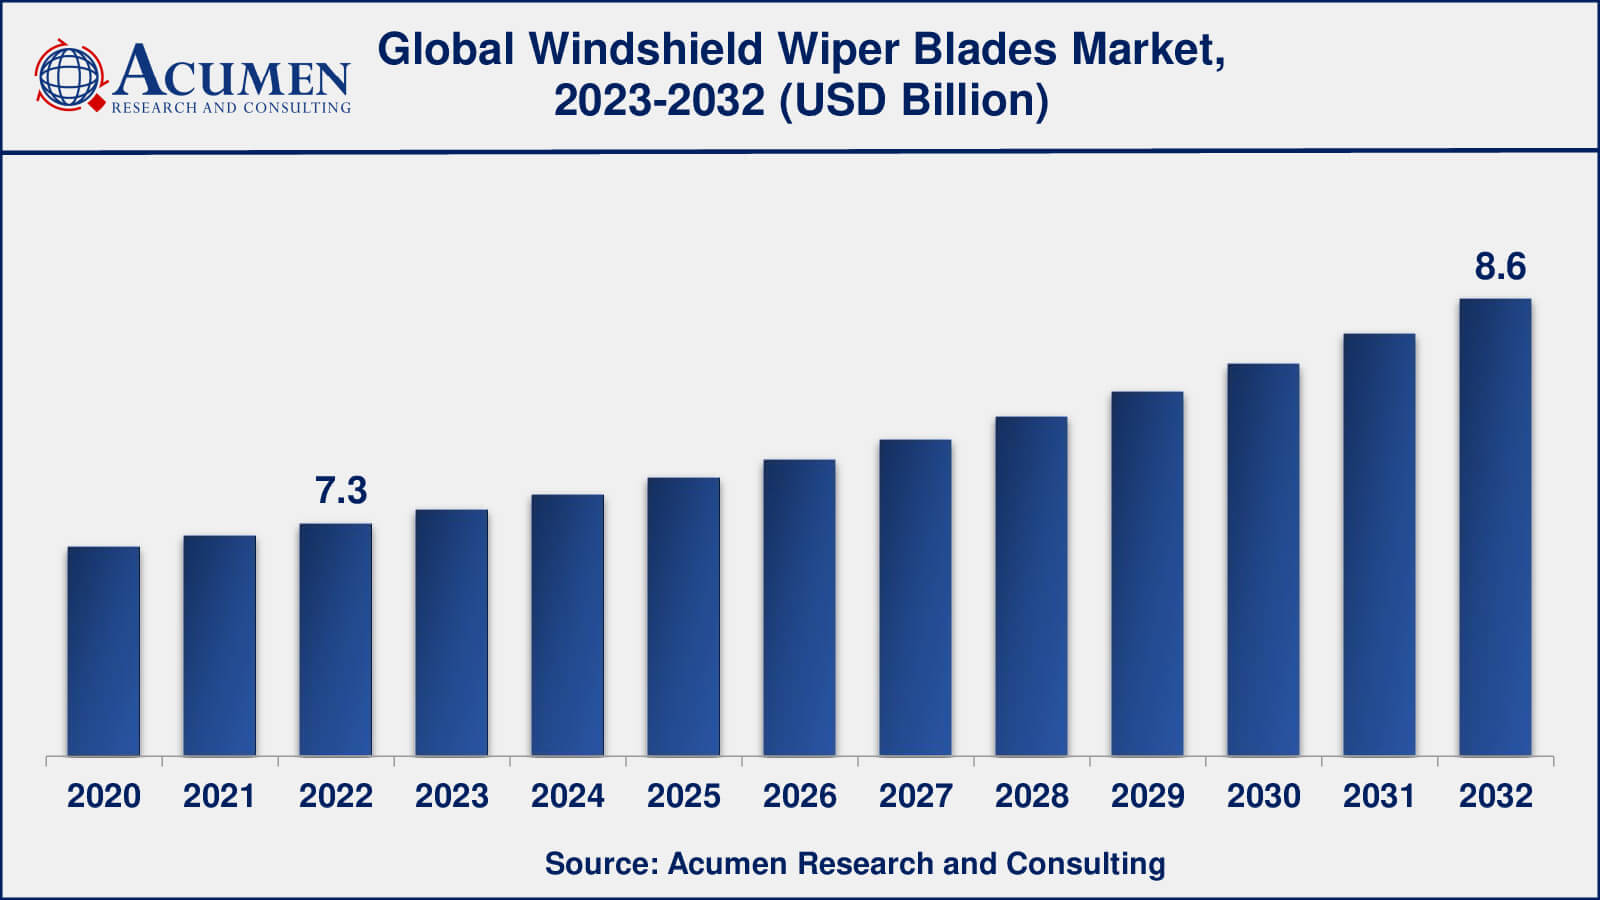 Windshield Wiper Blades Market Analysis Period